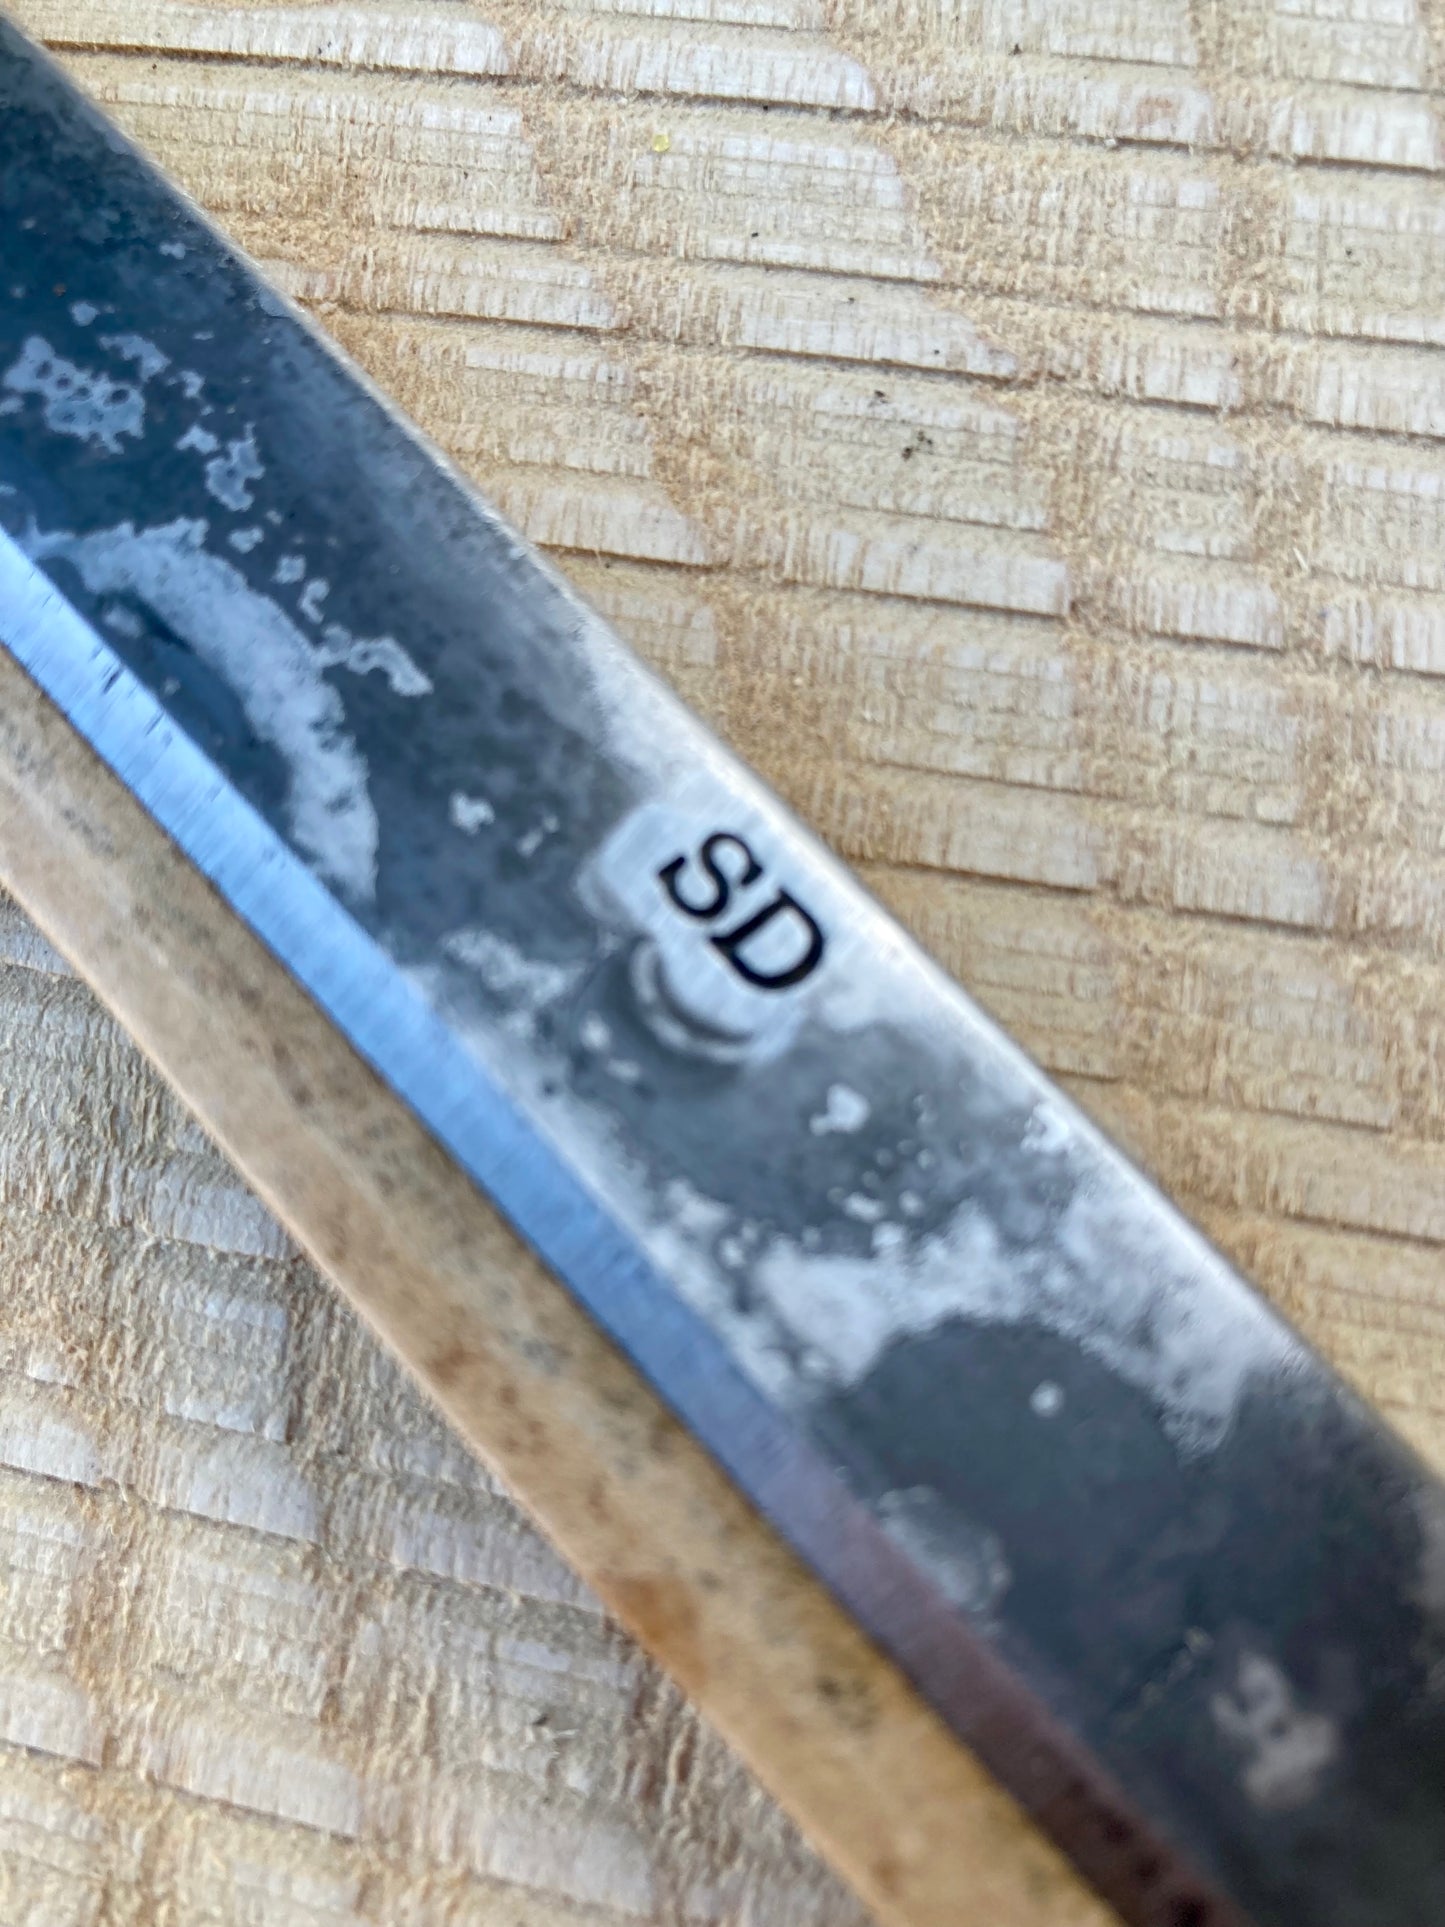 Svante Djarv - Drawknife, 14cm